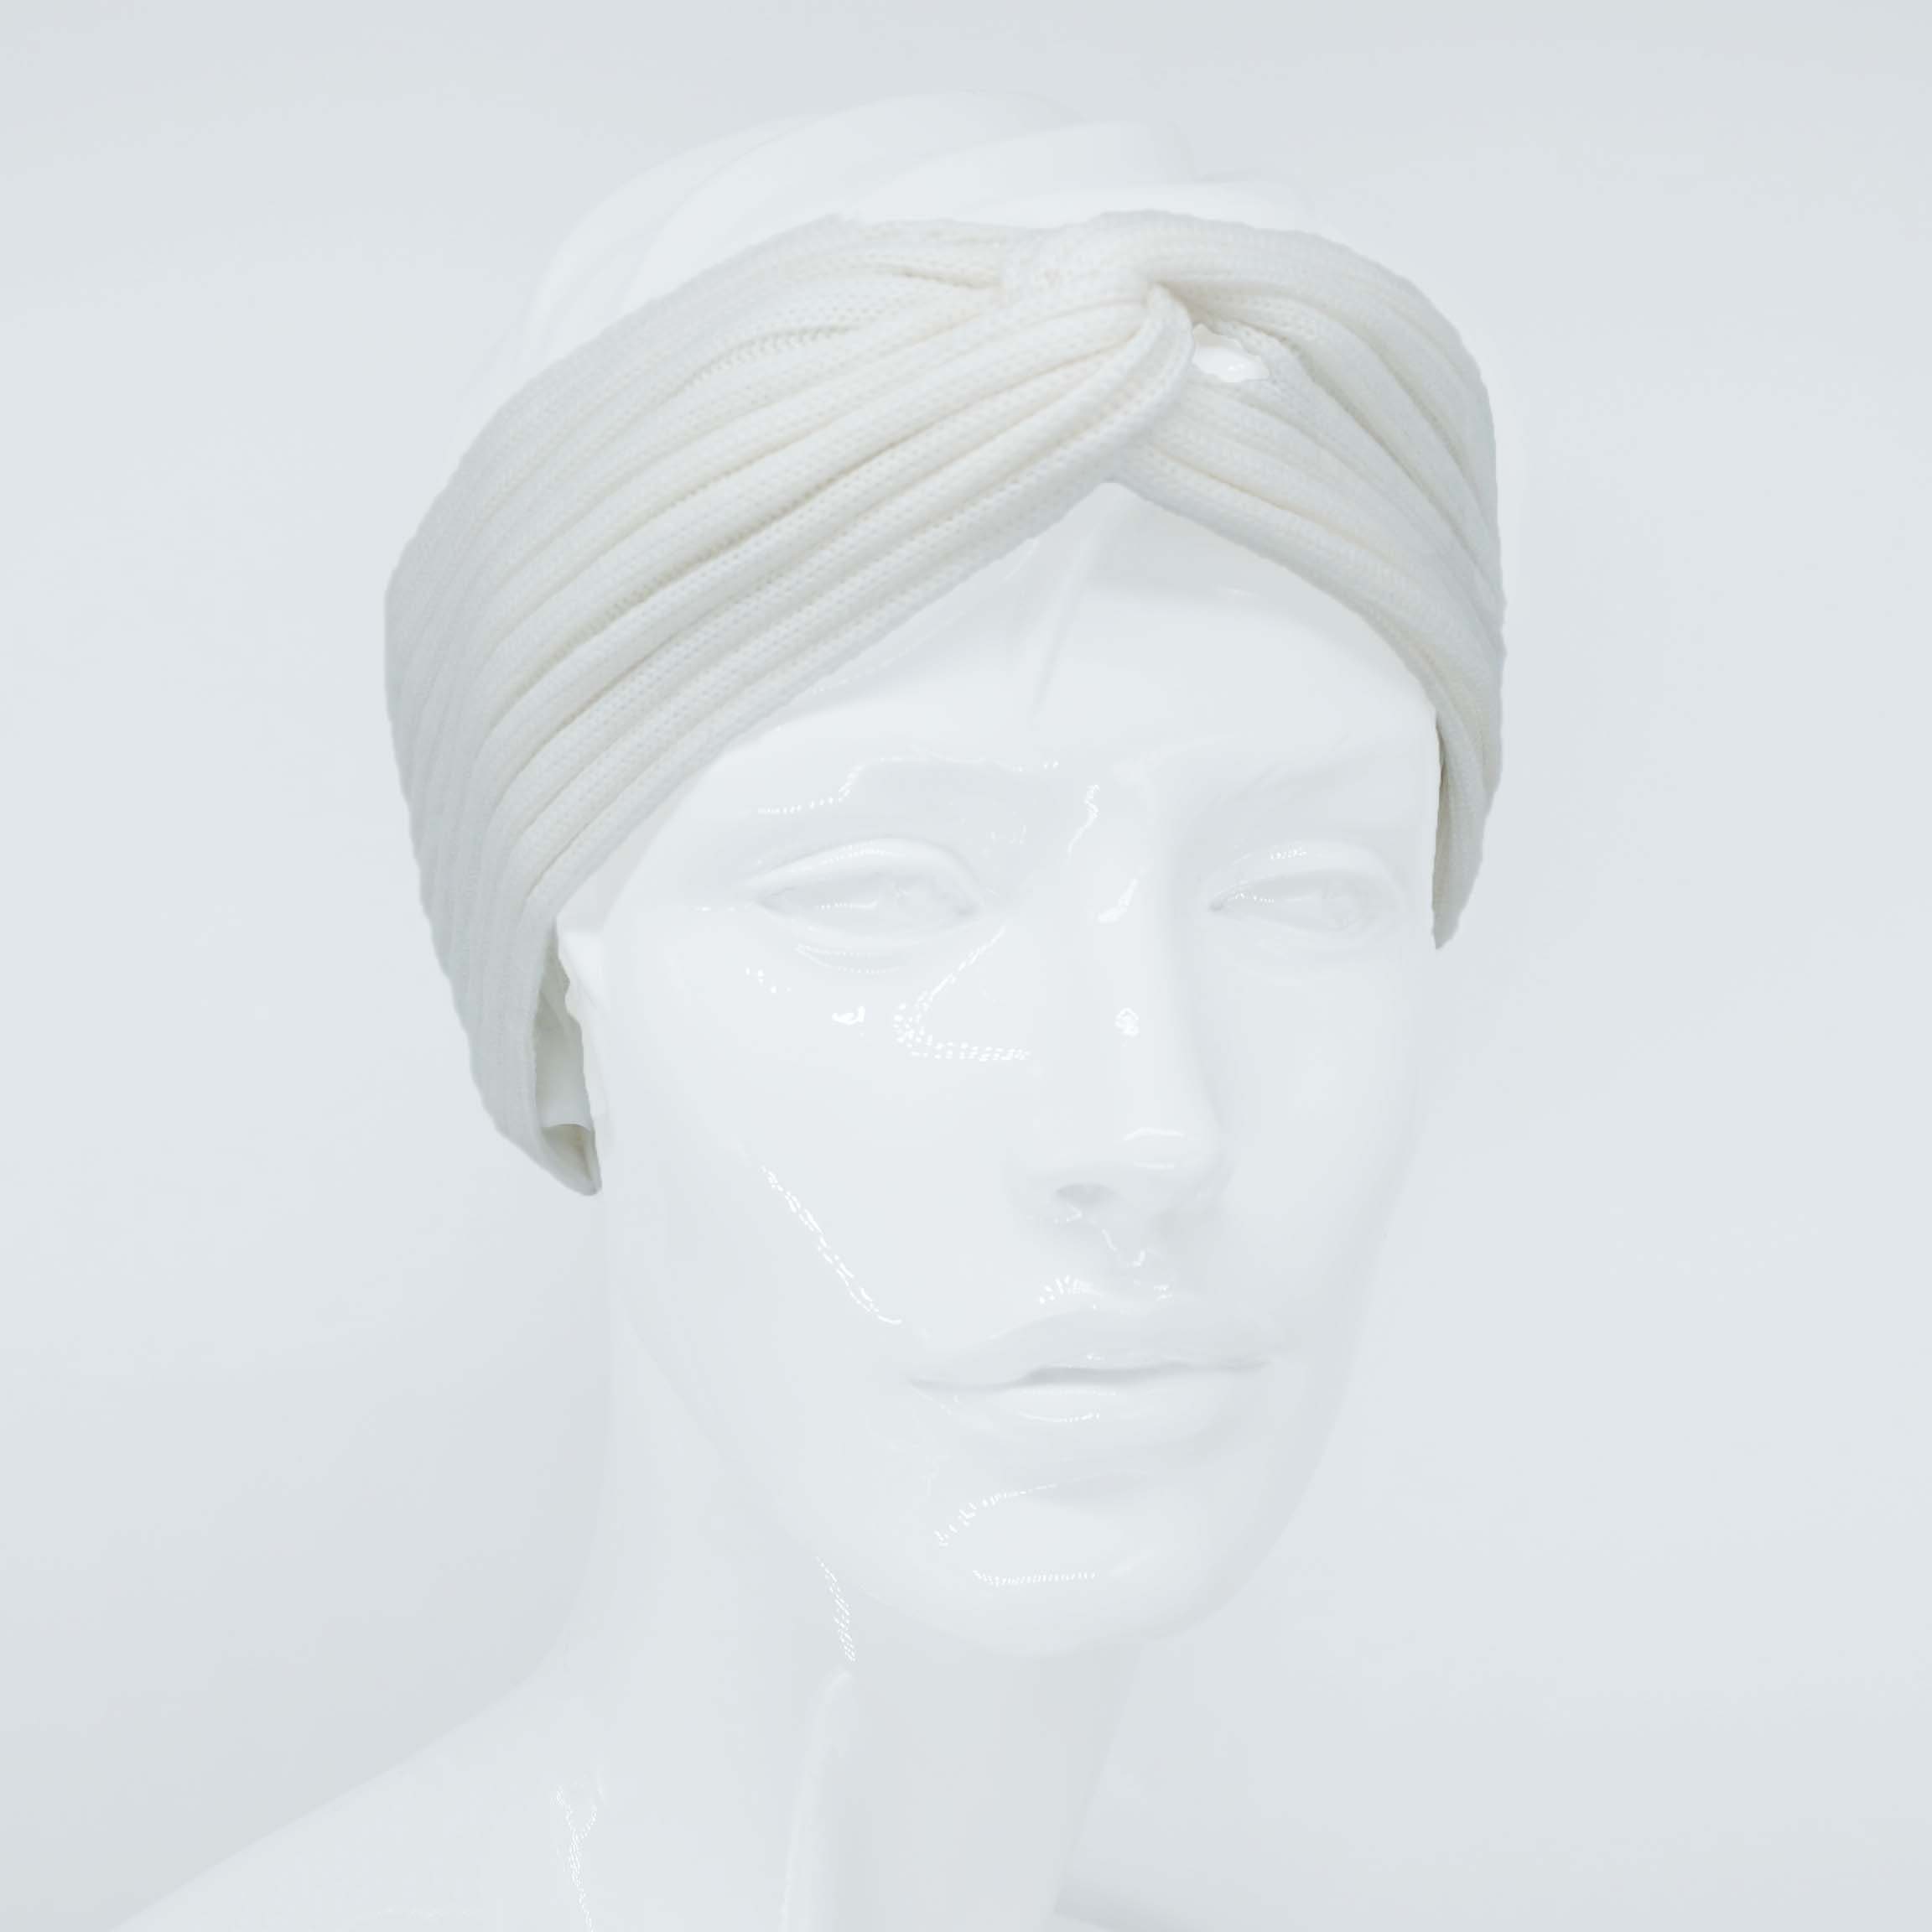 BEAZZ Stirnband Stirnband Ohrenwärmer Damen Winter 100% WOLLE Merino Feinstrick, warm und weich natur